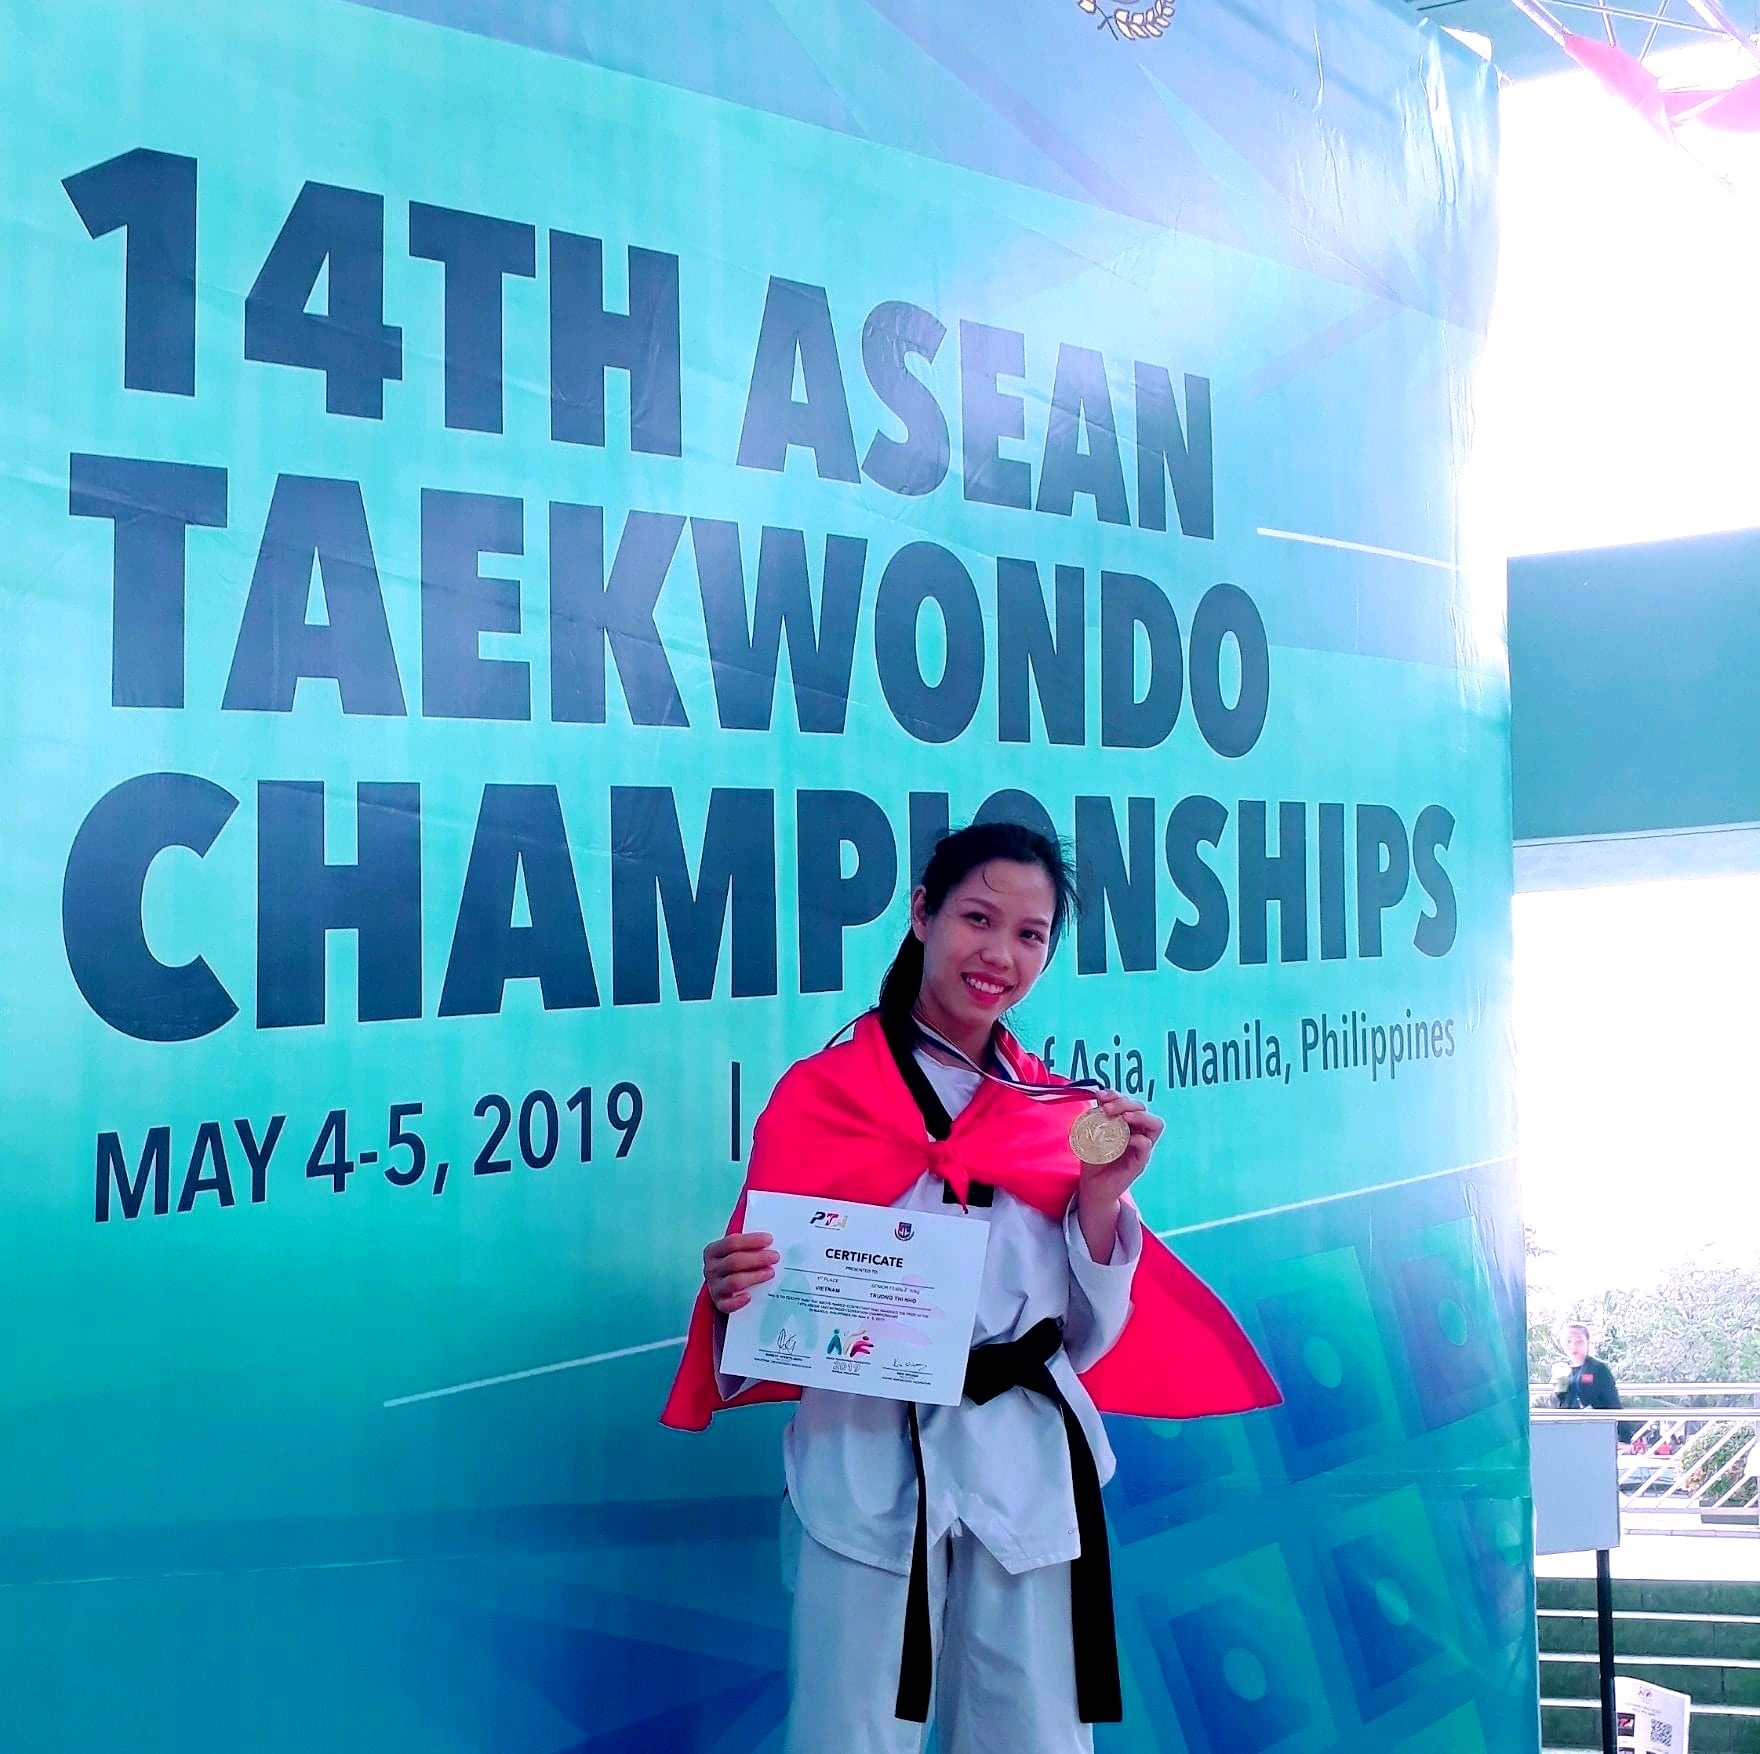 Nữ võ sĩ Taekwondo Trương Thị Nhớ đoạt huy chương vàng giải vô địch Taekwondo Đông Nam Á năm 2019. Ảnh: NVCC